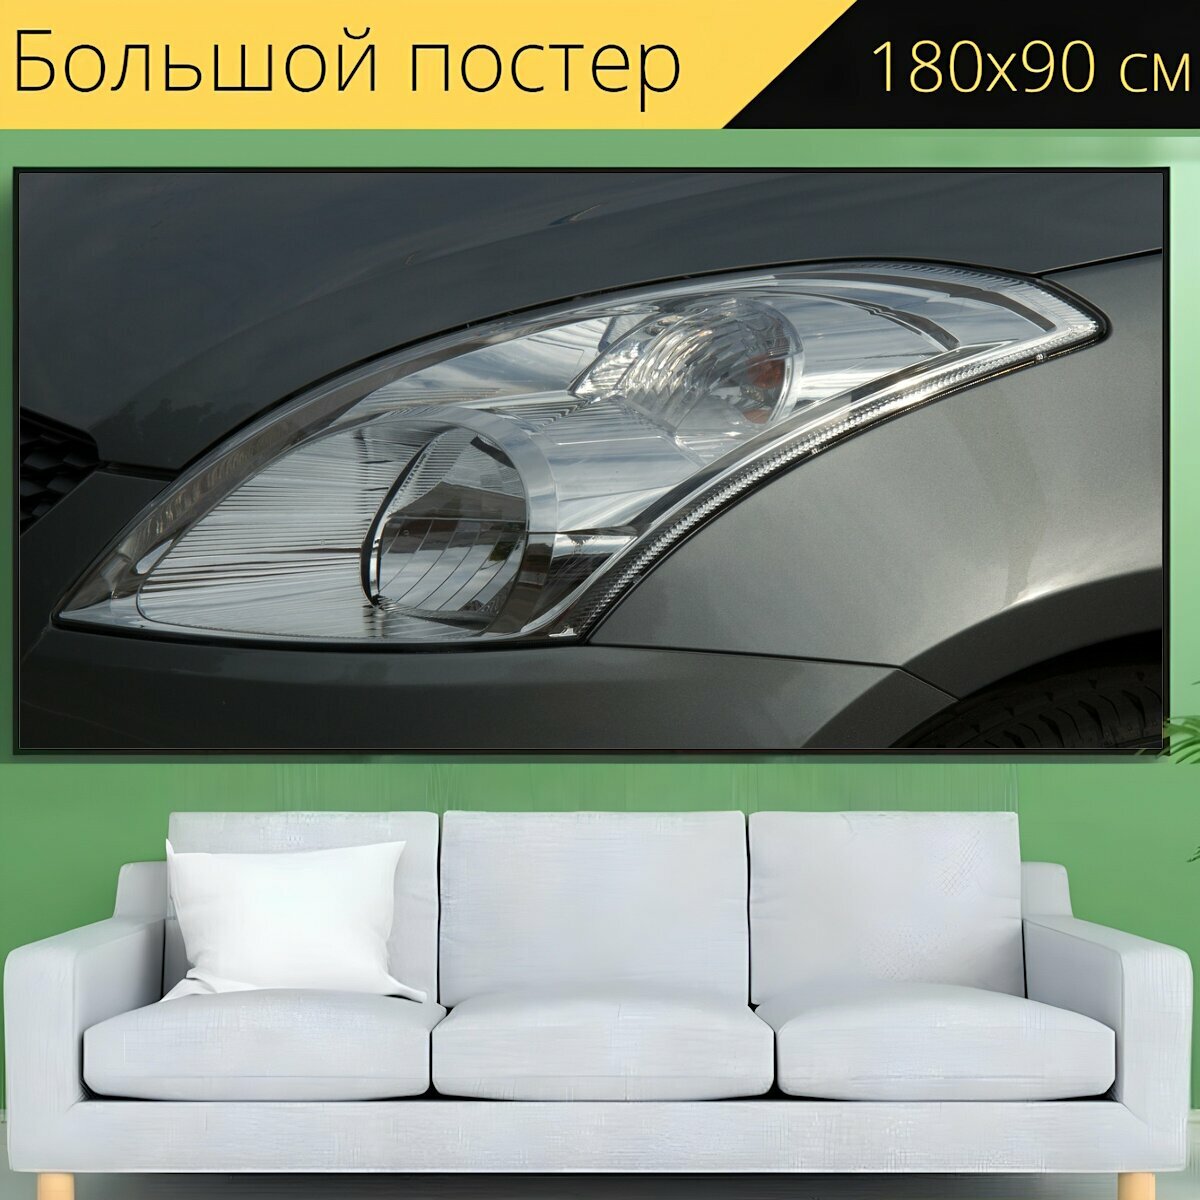 Большой постер "Фары, автомобиль, напольная лампа" 180 x 90 см. для интерьера